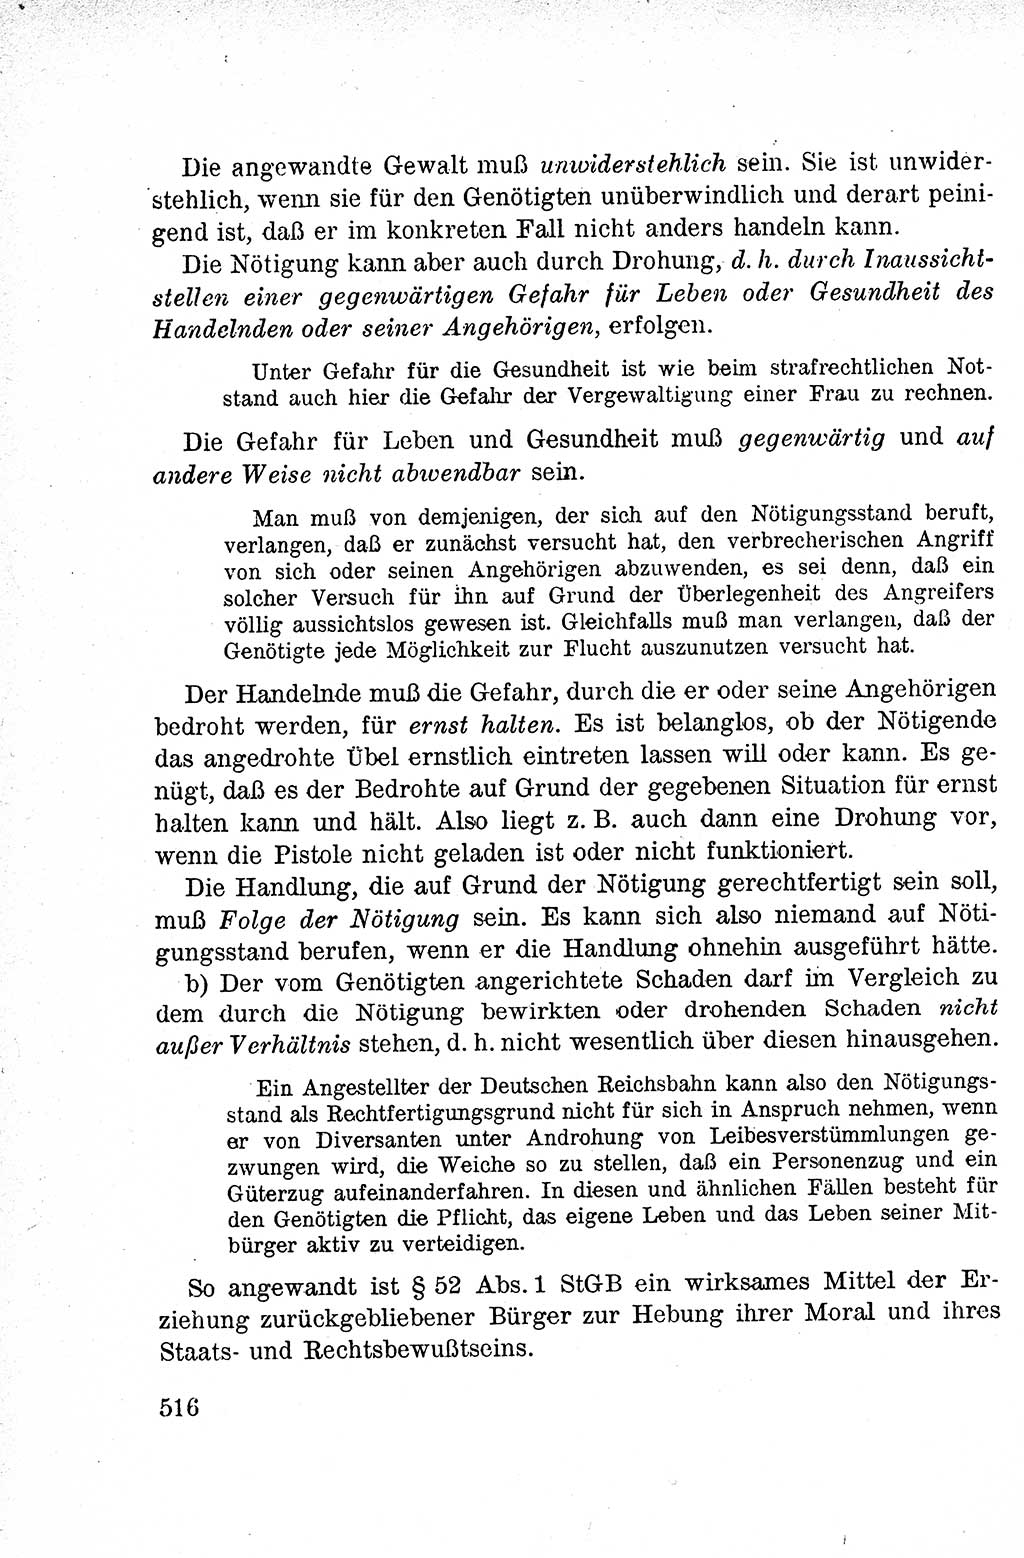 Lehrbuch des Strafrechts der Deutschen Demokratischen Republik (DDR), Allgemeiner Teil 1959, Seite 516 (Lb. Strafr. DDR AT 1959, S. 516)